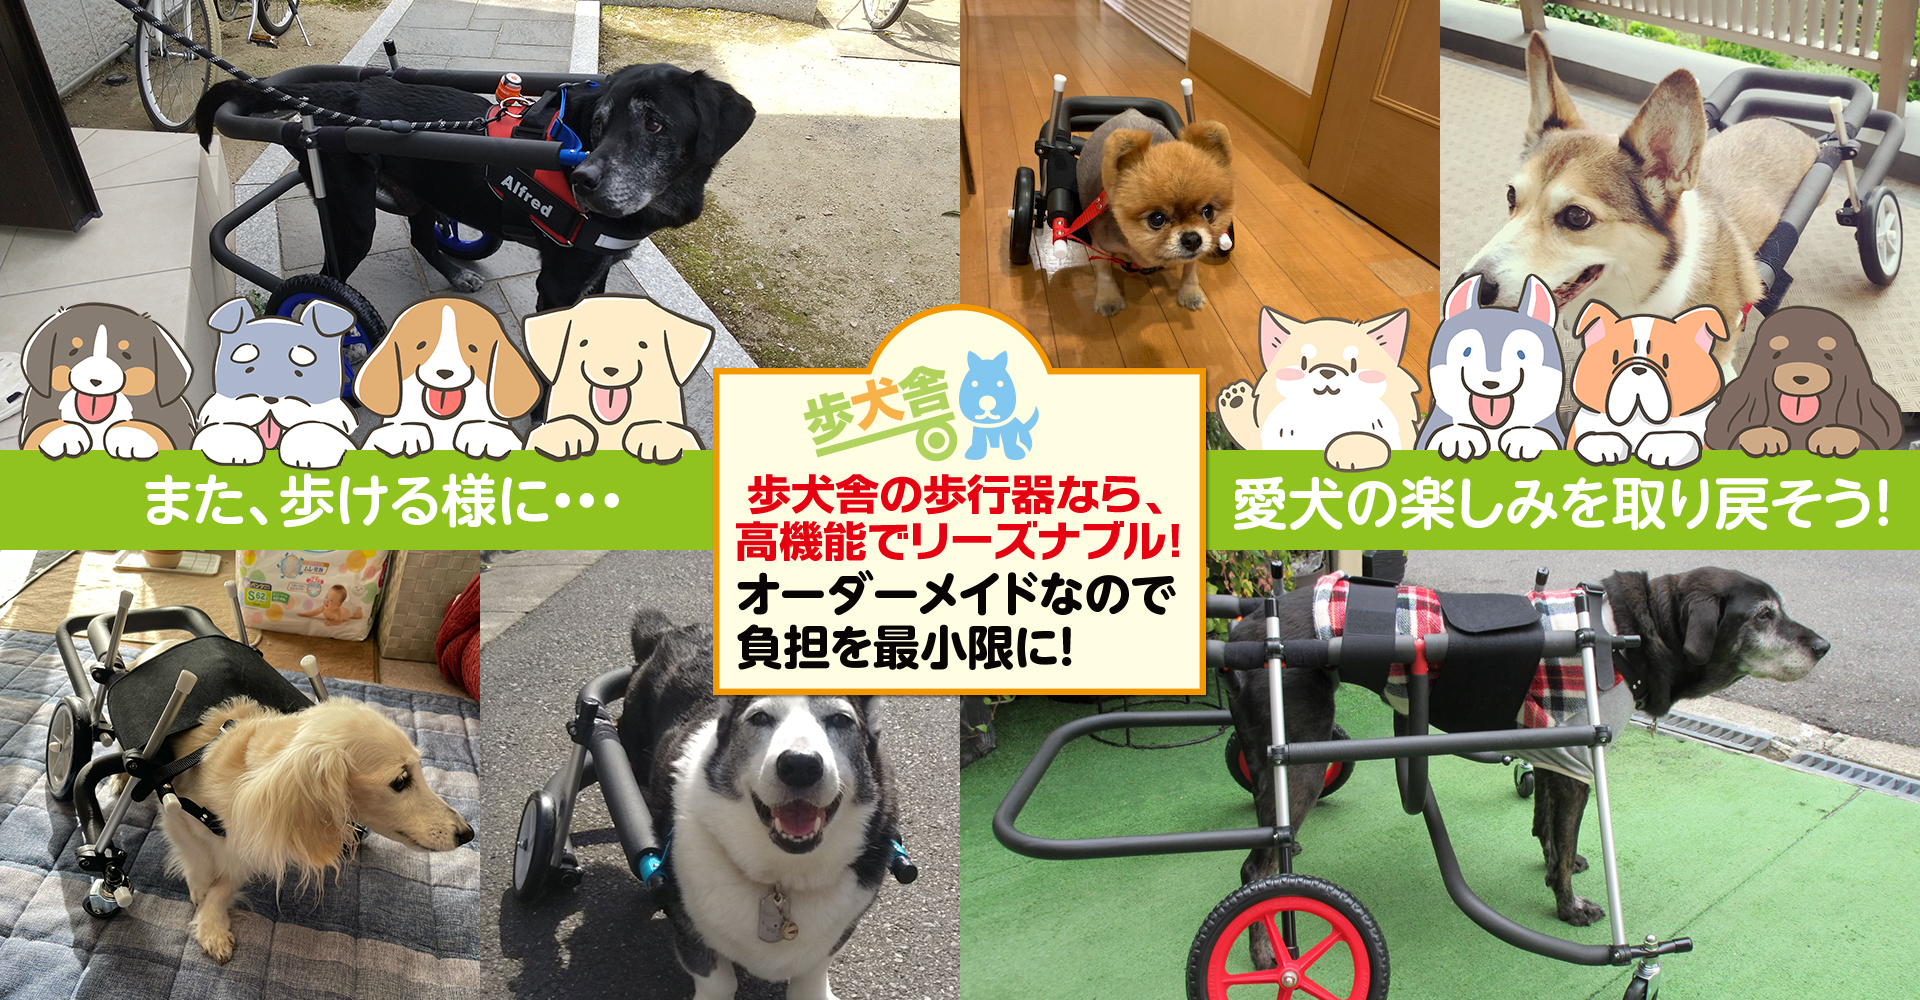 ポメラニアン4輪歩行器!リハビリ!食事補助!犬の歩行器!介護用!犬用車椅子!